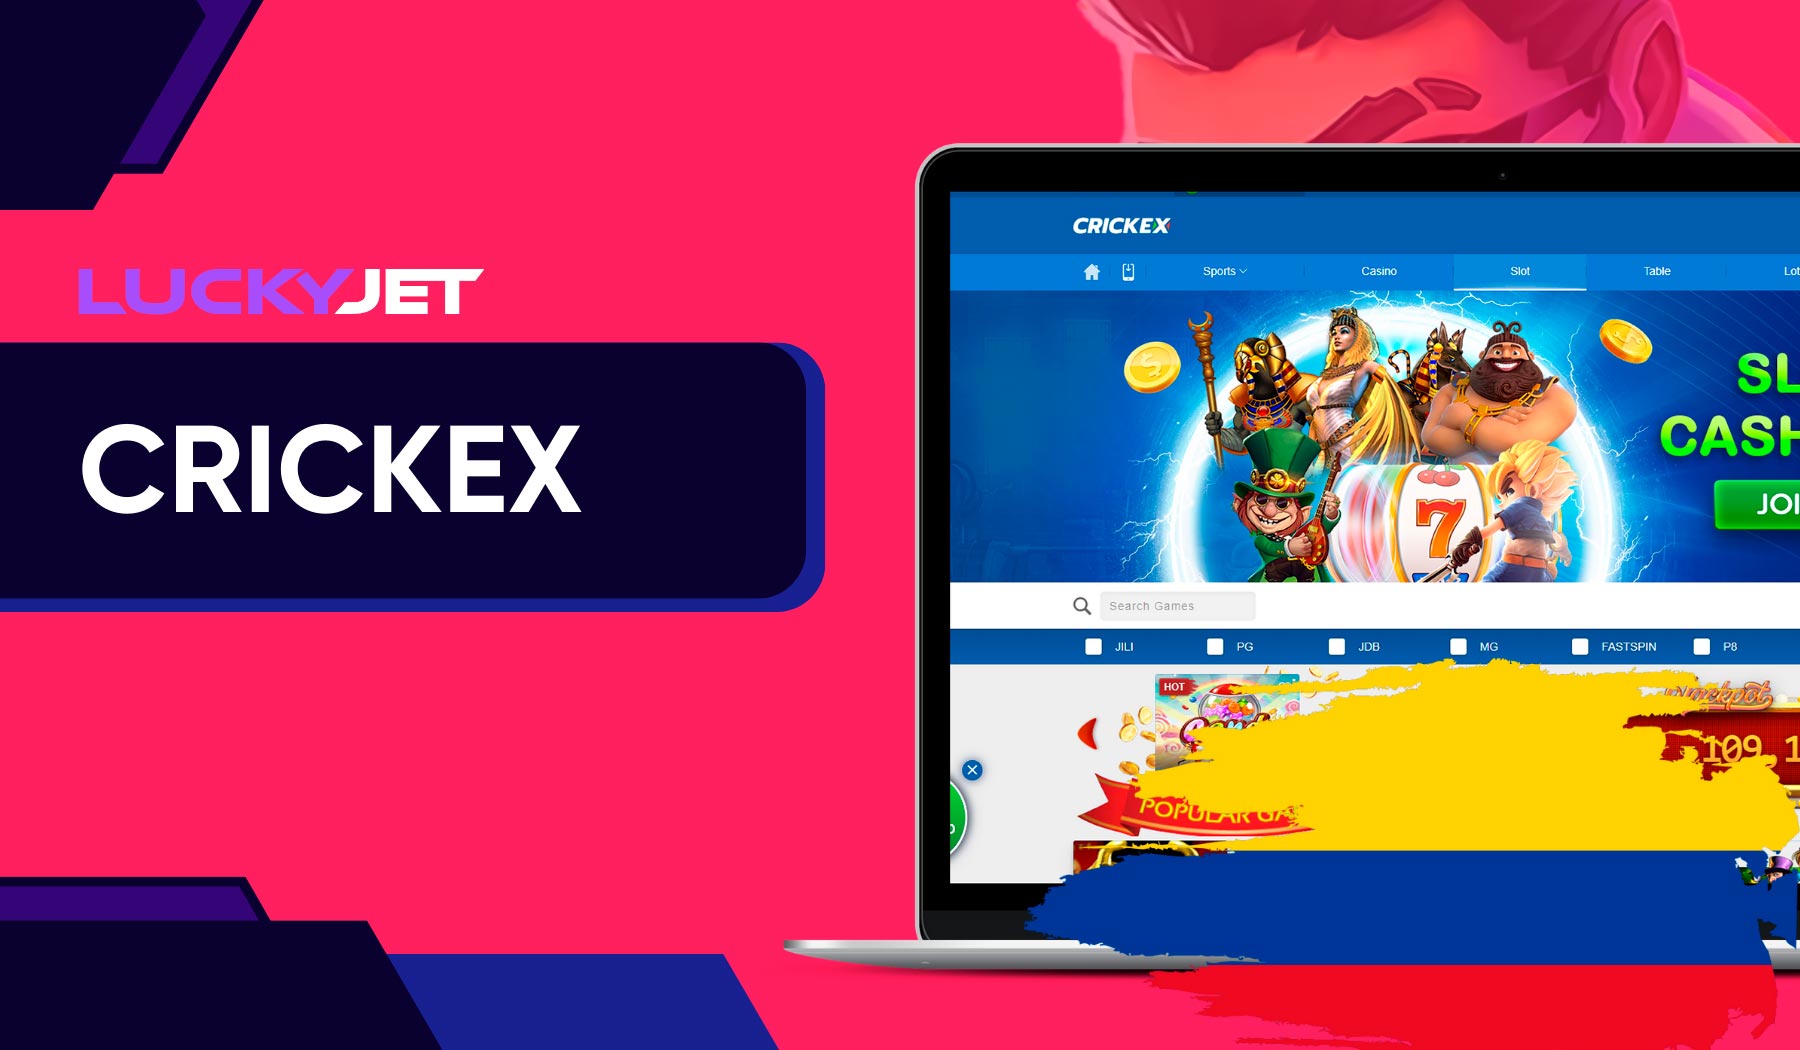 Crickex Lucky Jet es un juego diseñado específicamente para jugadores de Colombia